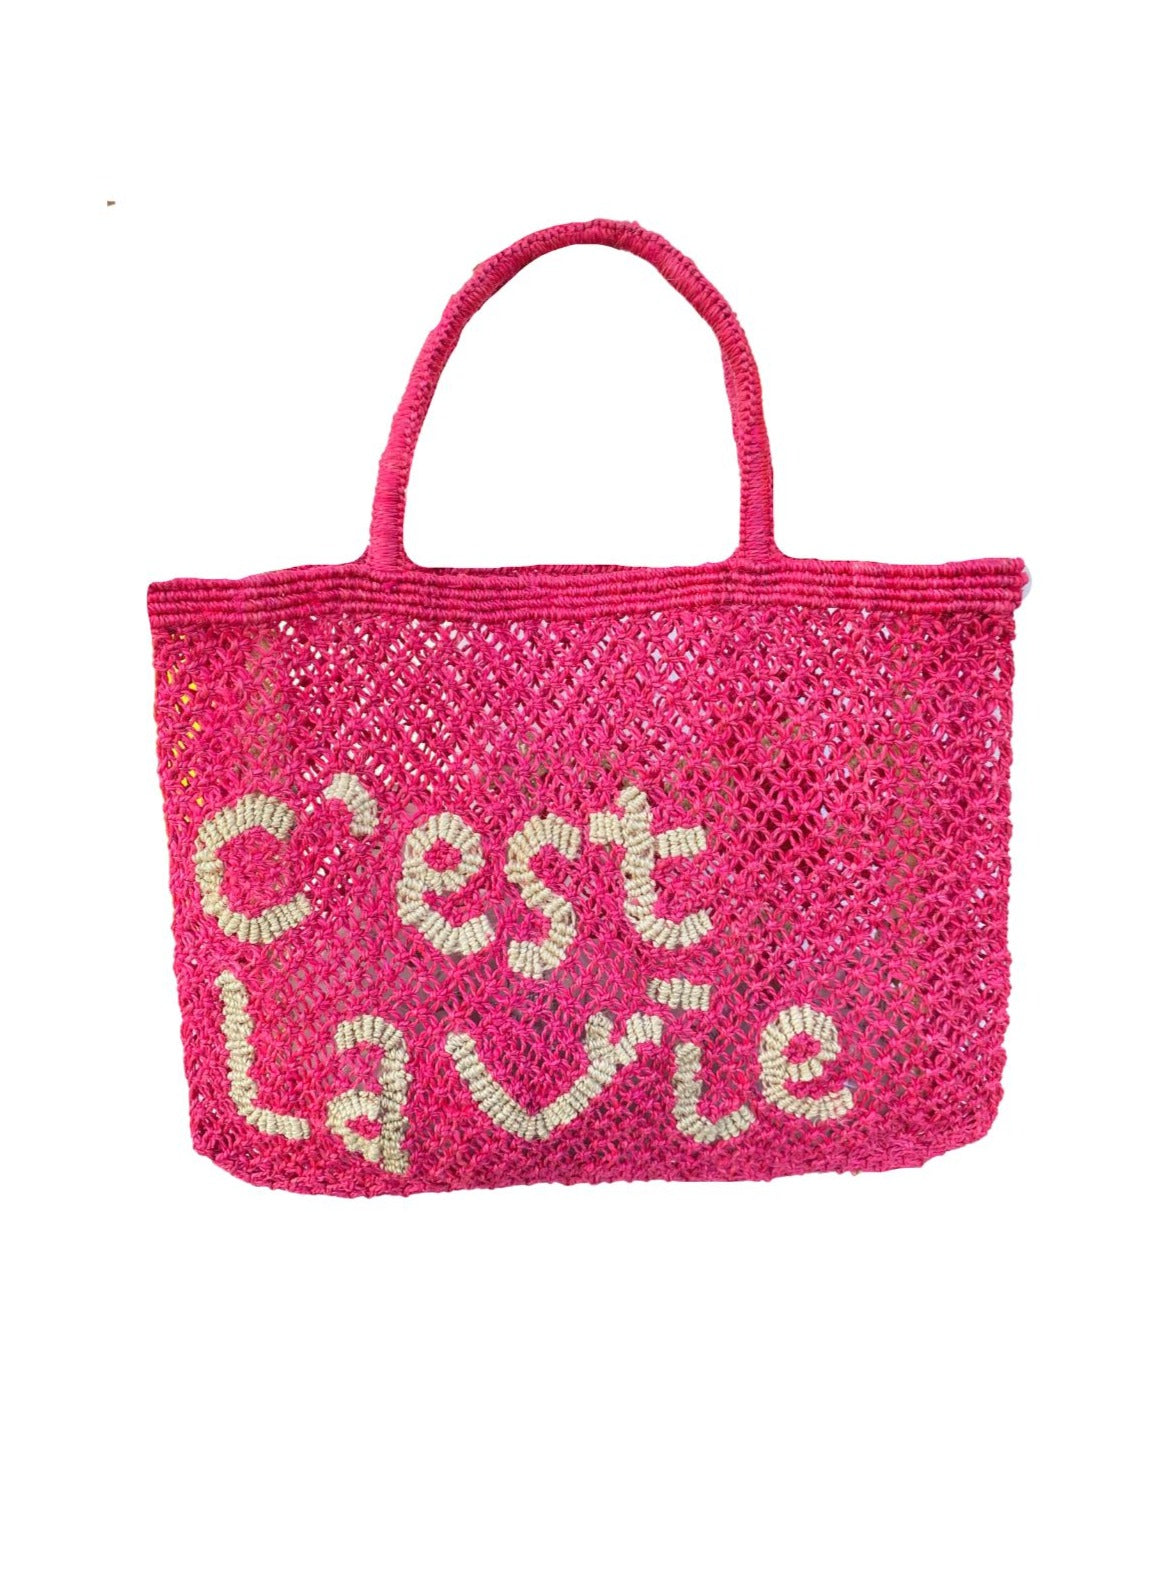 C'est La Vie Bag Hot Pink/Natural Large